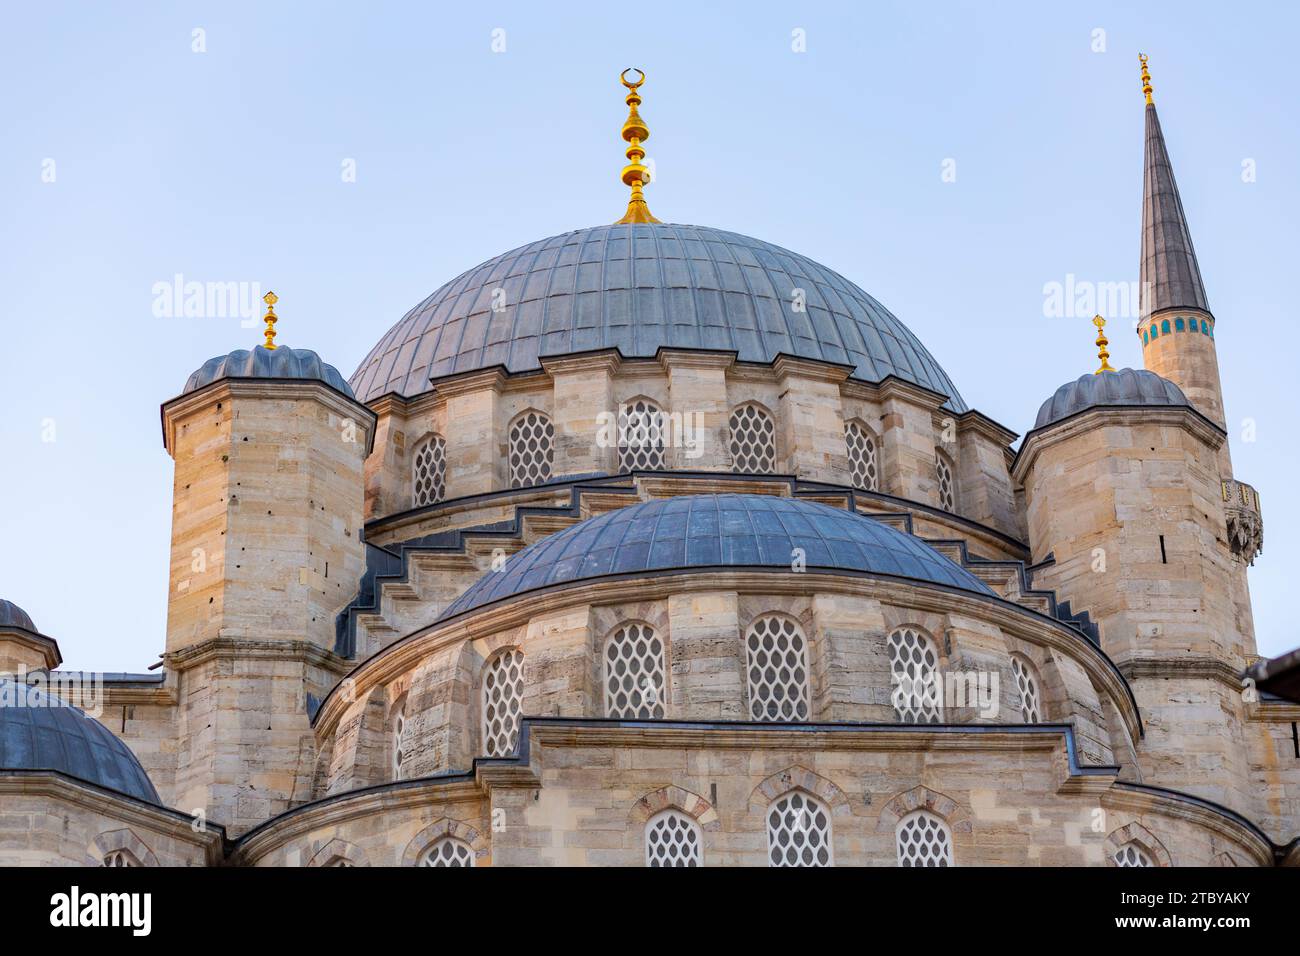 La nuova Moschea prende il nome dalla sua parziale ricostruzione e completamento tra il 1660 e il 1665, è una moschea imperiale ottomana situata a Eminonu, Istanbul Foto Stock